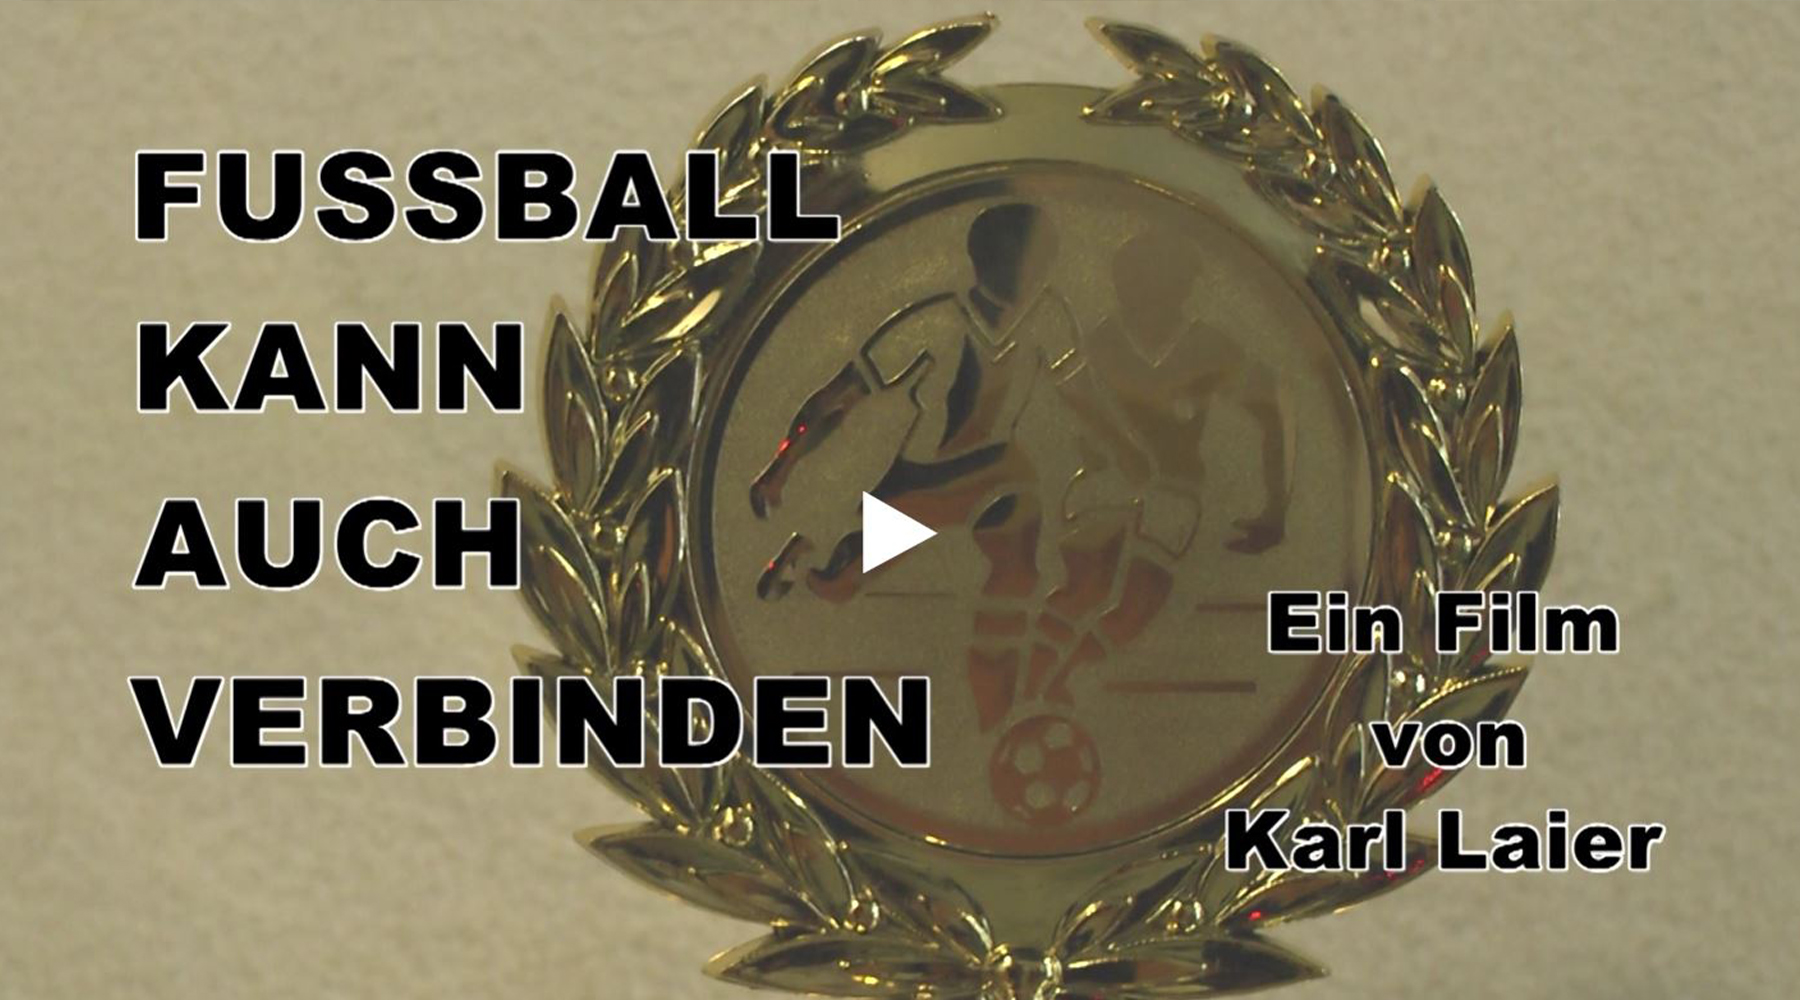 A1 – Karl Leier – Fussball kann auch verbinden